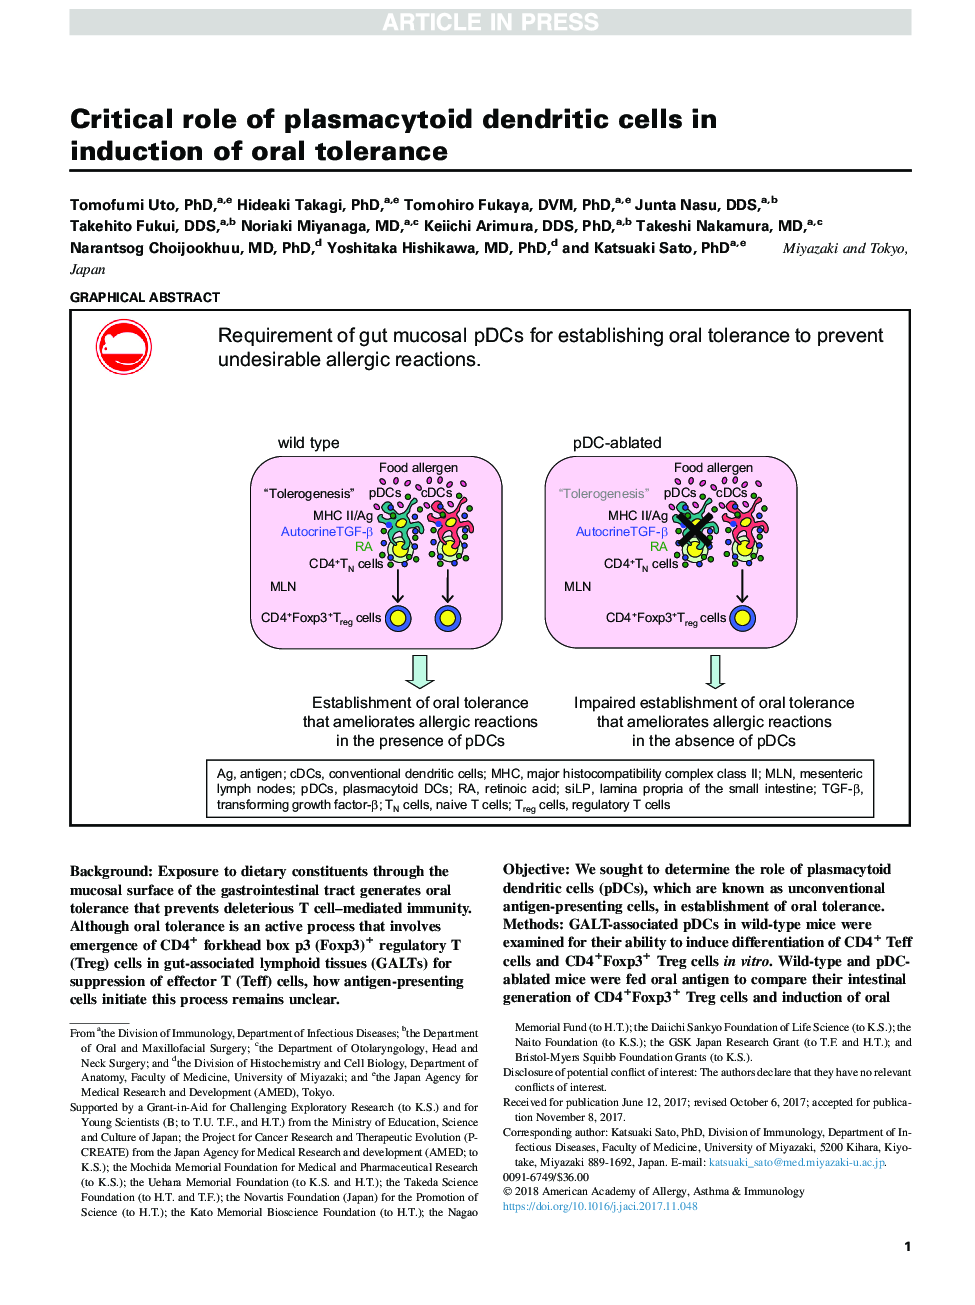 نقش حیاتی سلول های دندریتیک پلاسمایی سوز در القای تحمل دهانی 